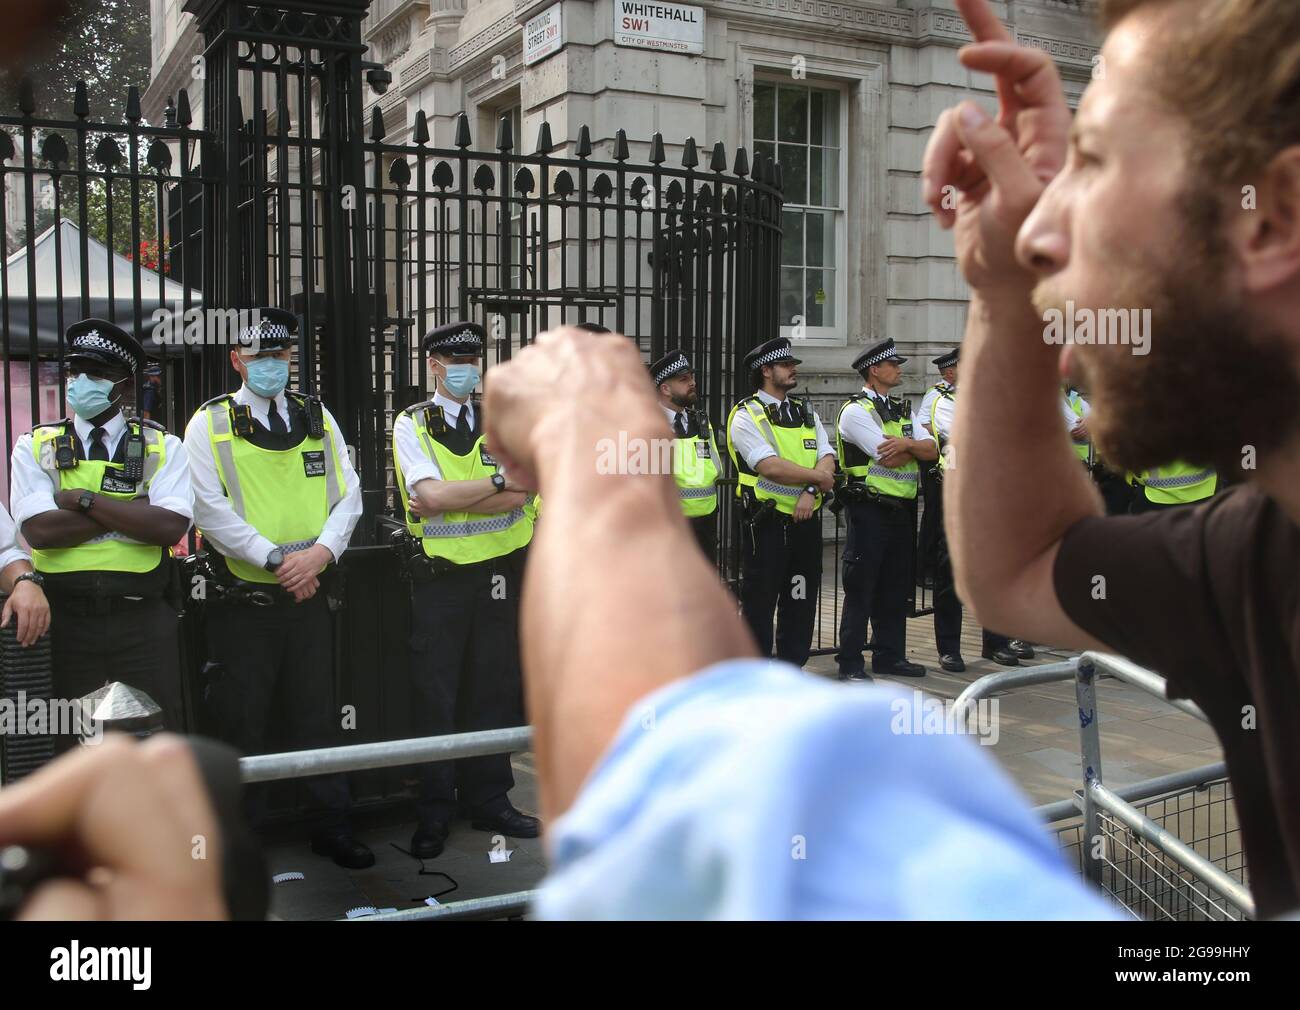 Demonstranten konfrontieren Polizeilinien vor der Downing Street während der Demonstration.Demonstranten protestieren auf dem Trafalgar Square, London, im Rahmen der weltweiten Kundgebung für Freiheit. Die Demonstranten demonstrieren gegen den Impfpass, die Covid-19-Impfung für Kinder und eine Reihe anderer Einschränkungen des Coronavirus. Stockfoto